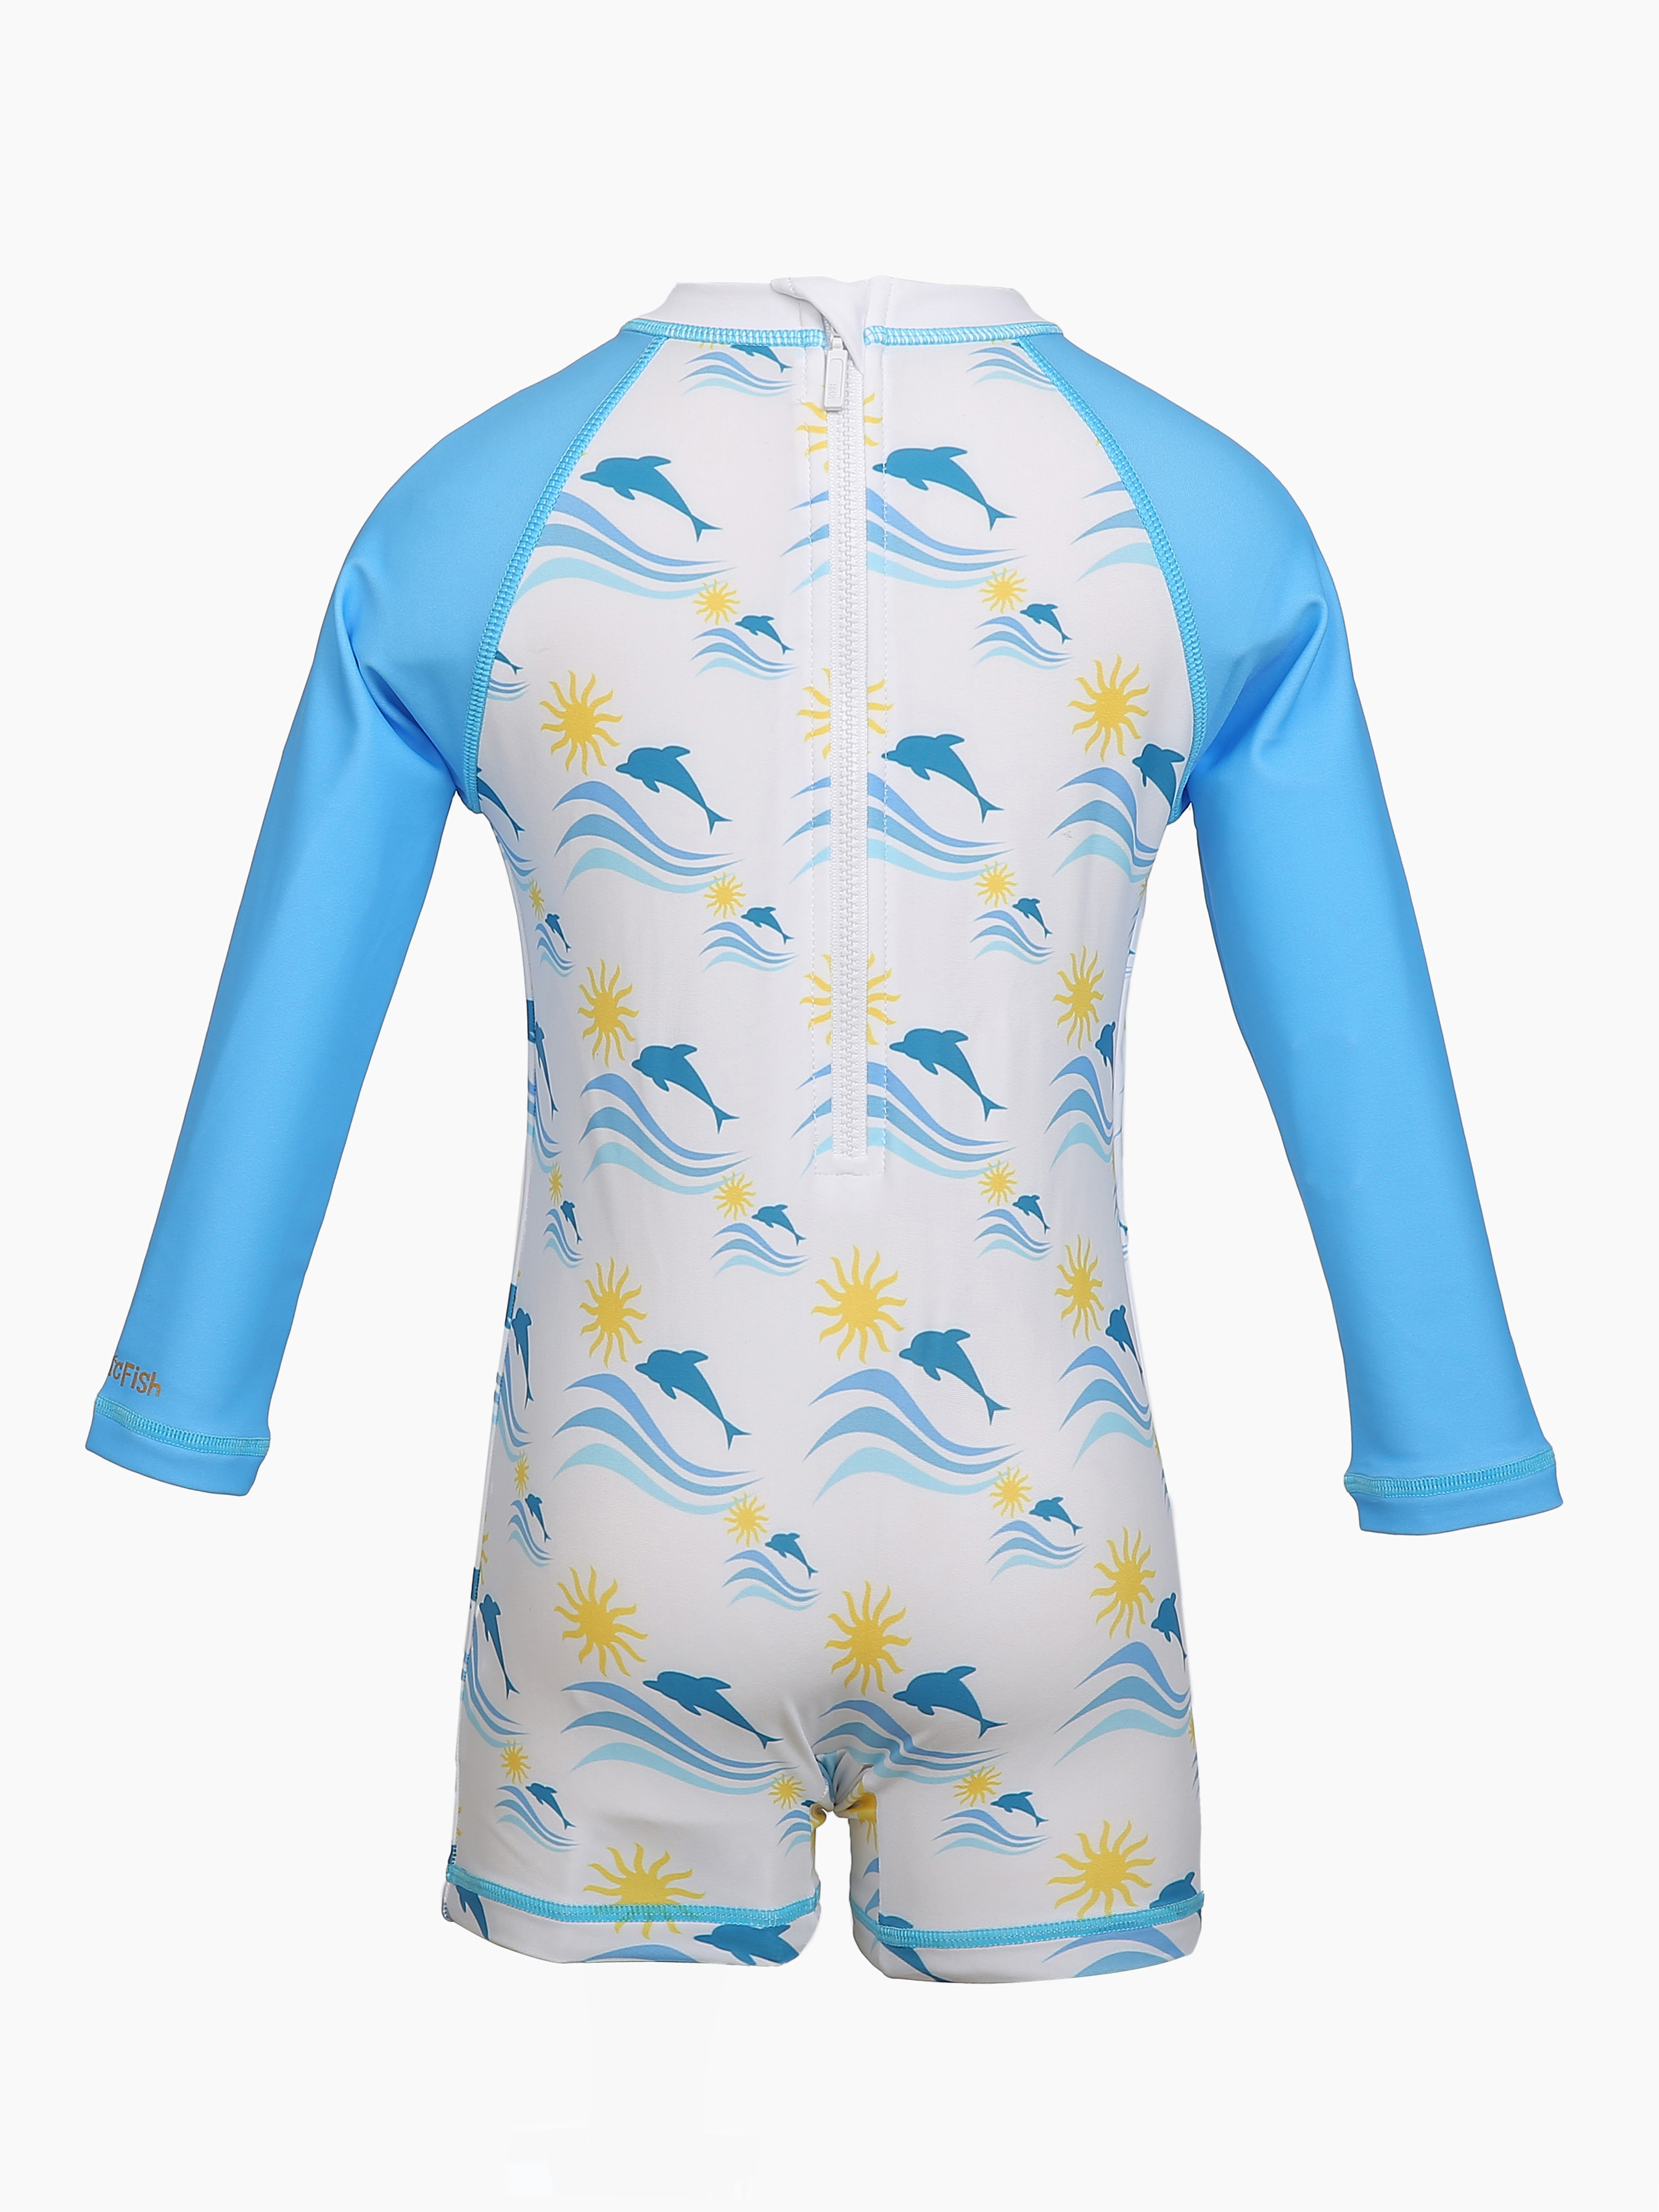 Đồ bơi chống nắng cao cấp cho bé trai Felix TropicFish - TropicFish Baby Swimwear Felix